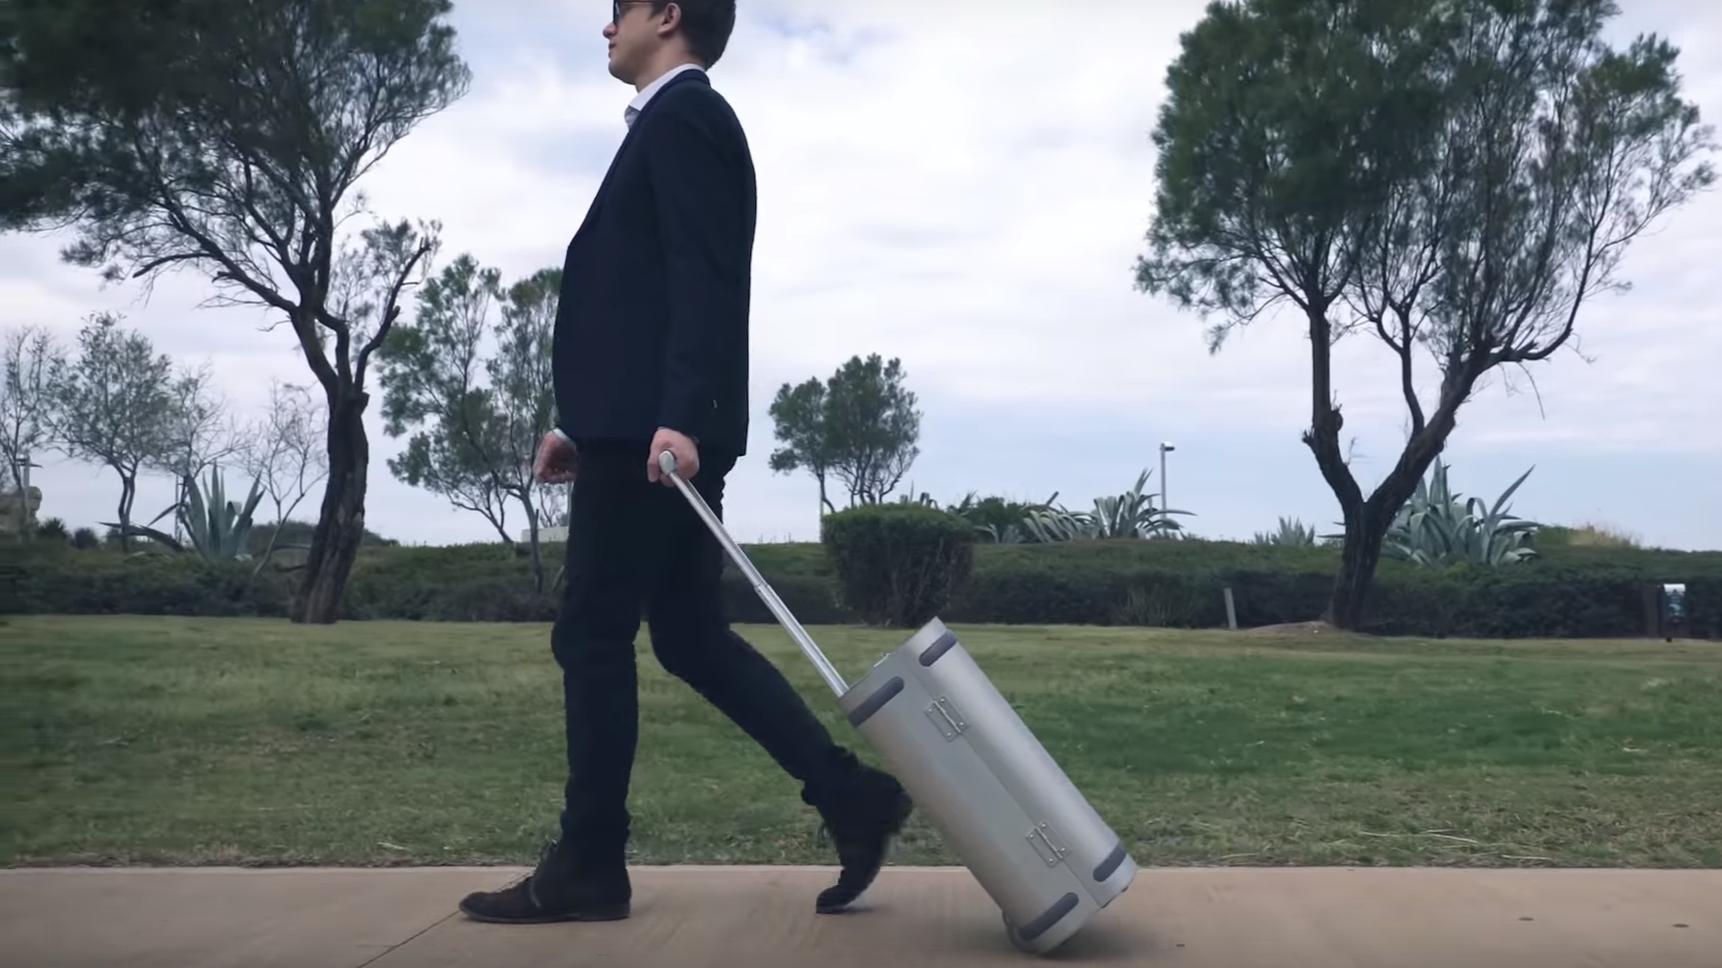 Denne smarte kofferten har samlet inn åtte ganger finansieringsmålet på Kickstarter